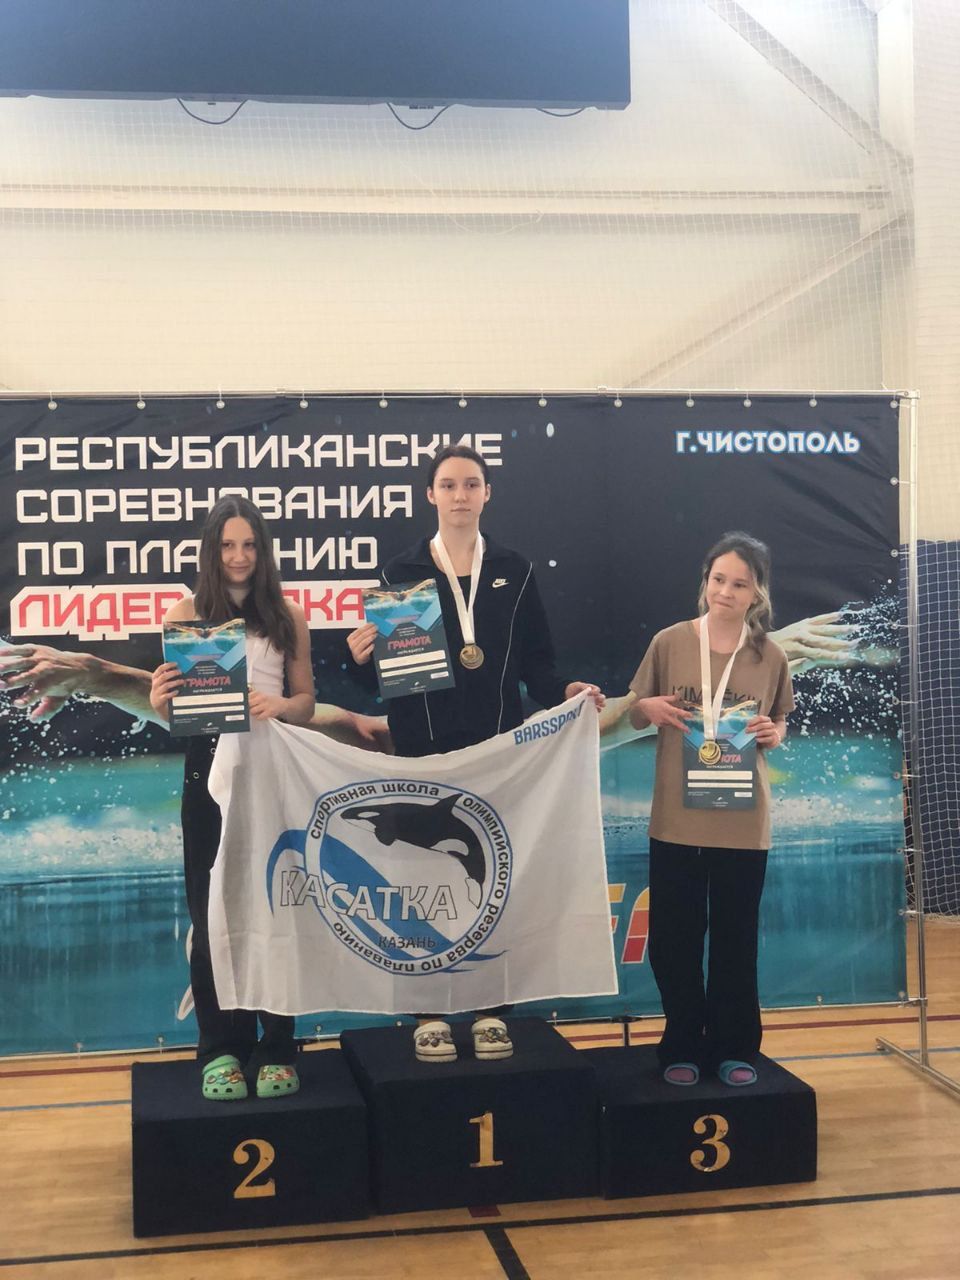 Нурлатские спортсмены показали достойные результаты в соревнованиях по плаванию